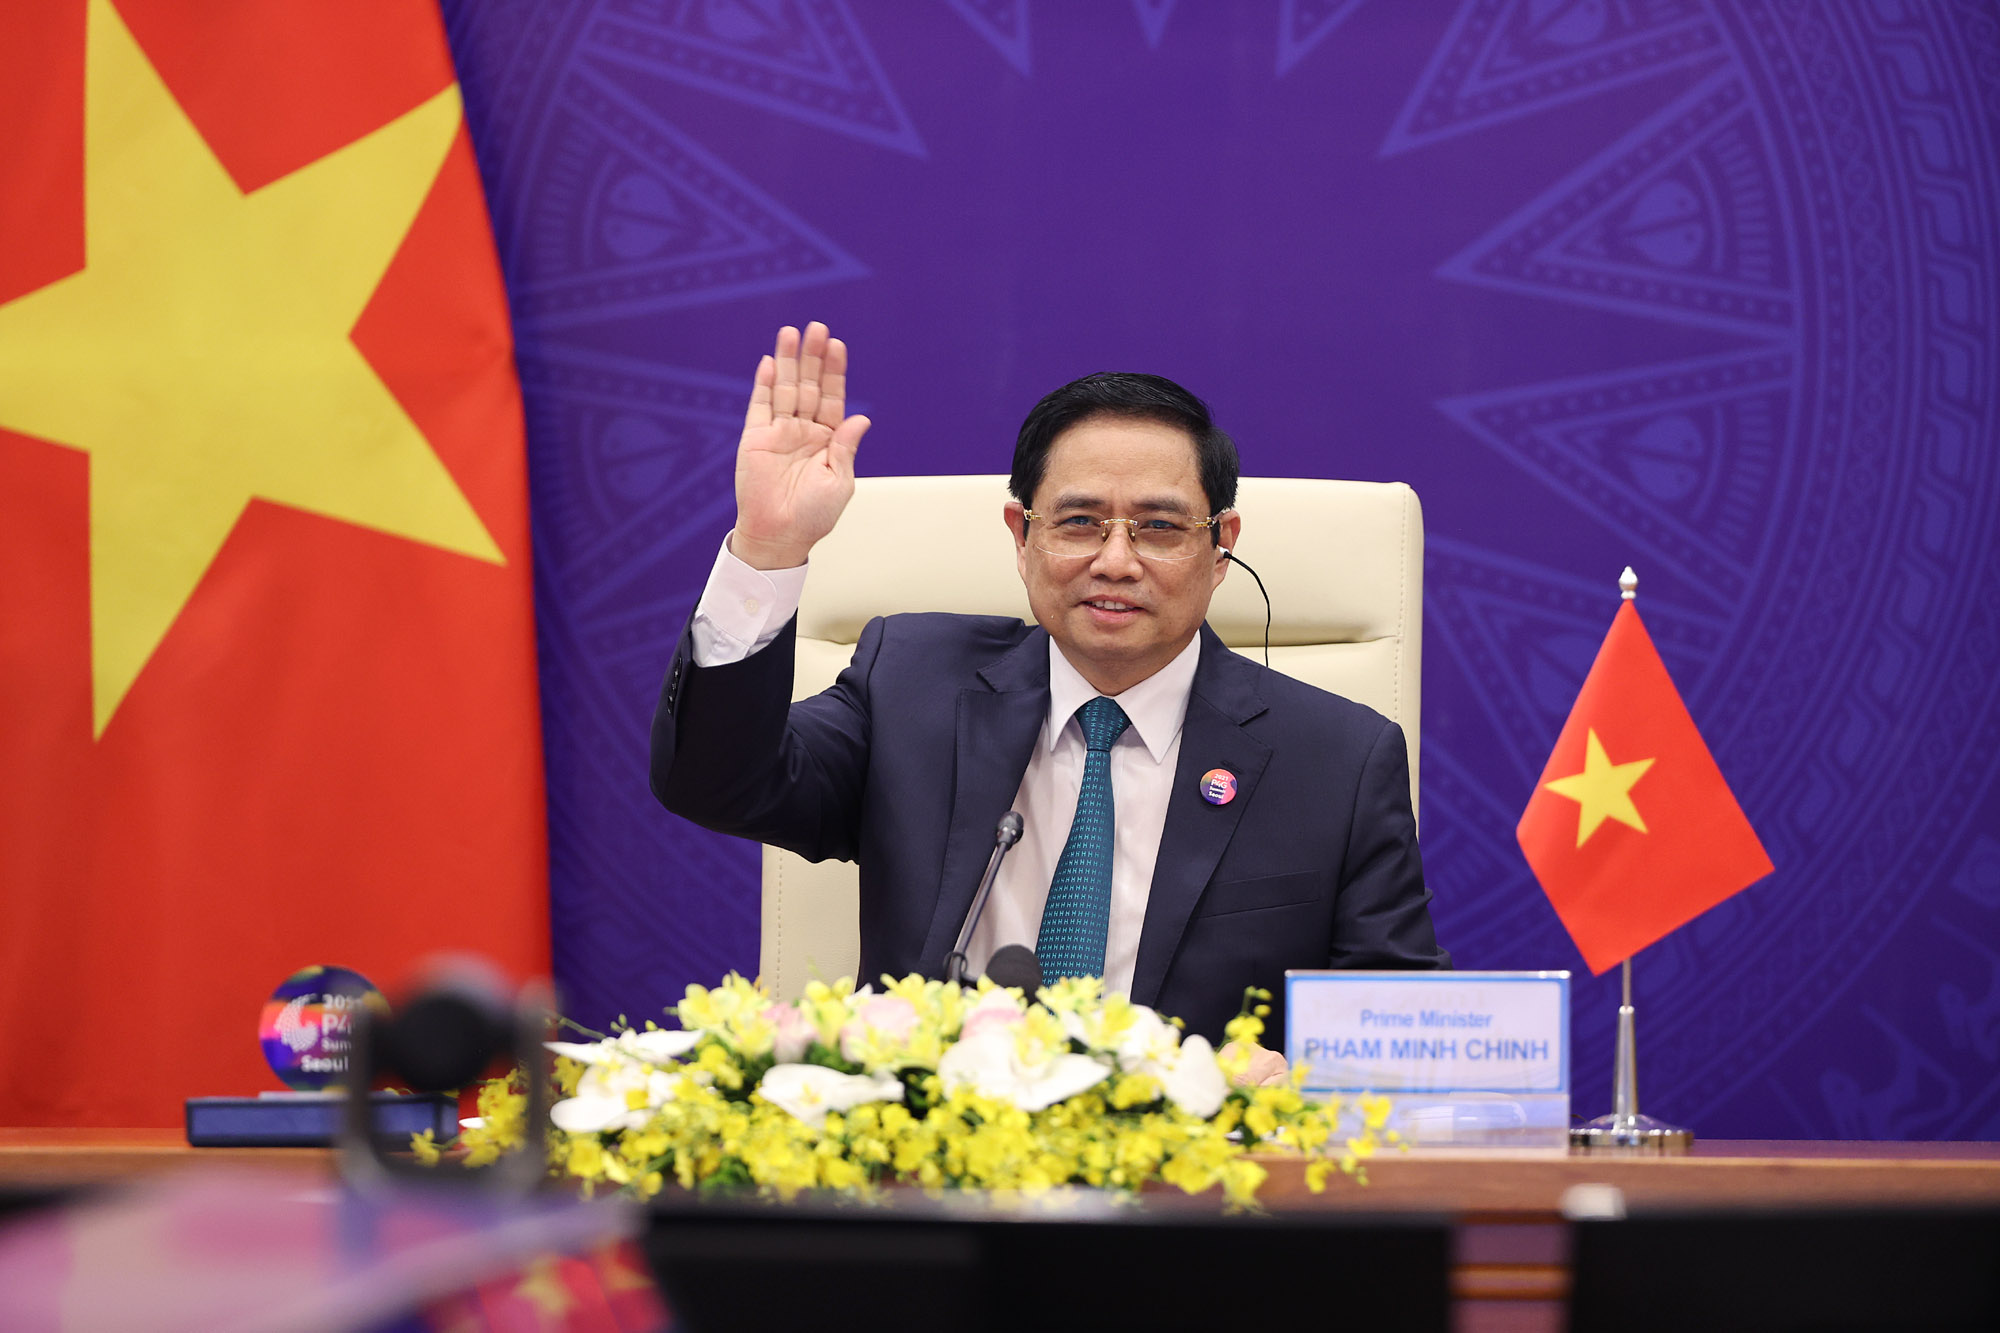 Kinh tế Việt Nam đã ghi nhận mức tăng trưởng đáng kể trong năm 2024, cho thấy sự cải thiện và ổn định của nền kinh tế. Điều này đã mang lại cơ hội cho các doanh nghiệp phát triển và mở rộng hoạt động của mình, góp phần đưa đất nước tiến về phía trước. Hãy xem hình ảnh để hiểu rõ hơn về sự tiến bộ này.